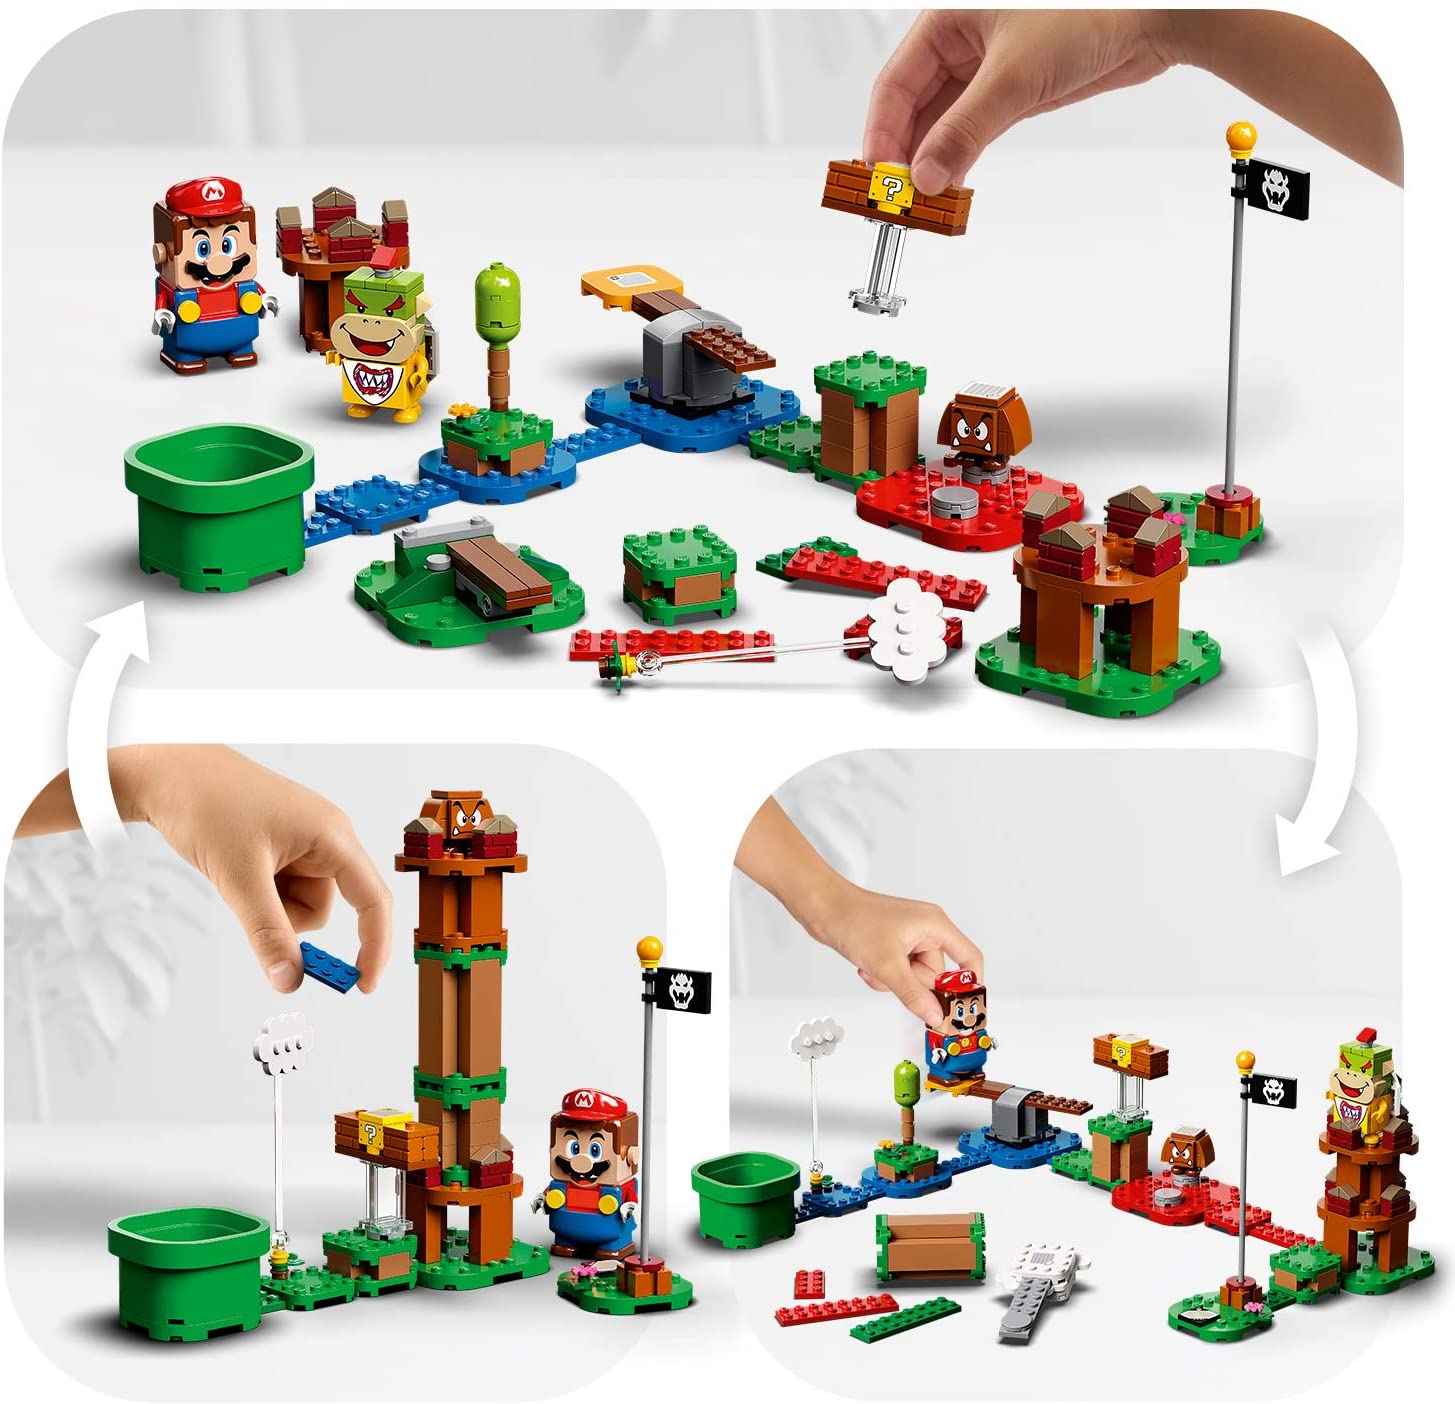 Pack inicial Aventuras con Mario, LEGO Super Mario 71360 varios modos de construccion